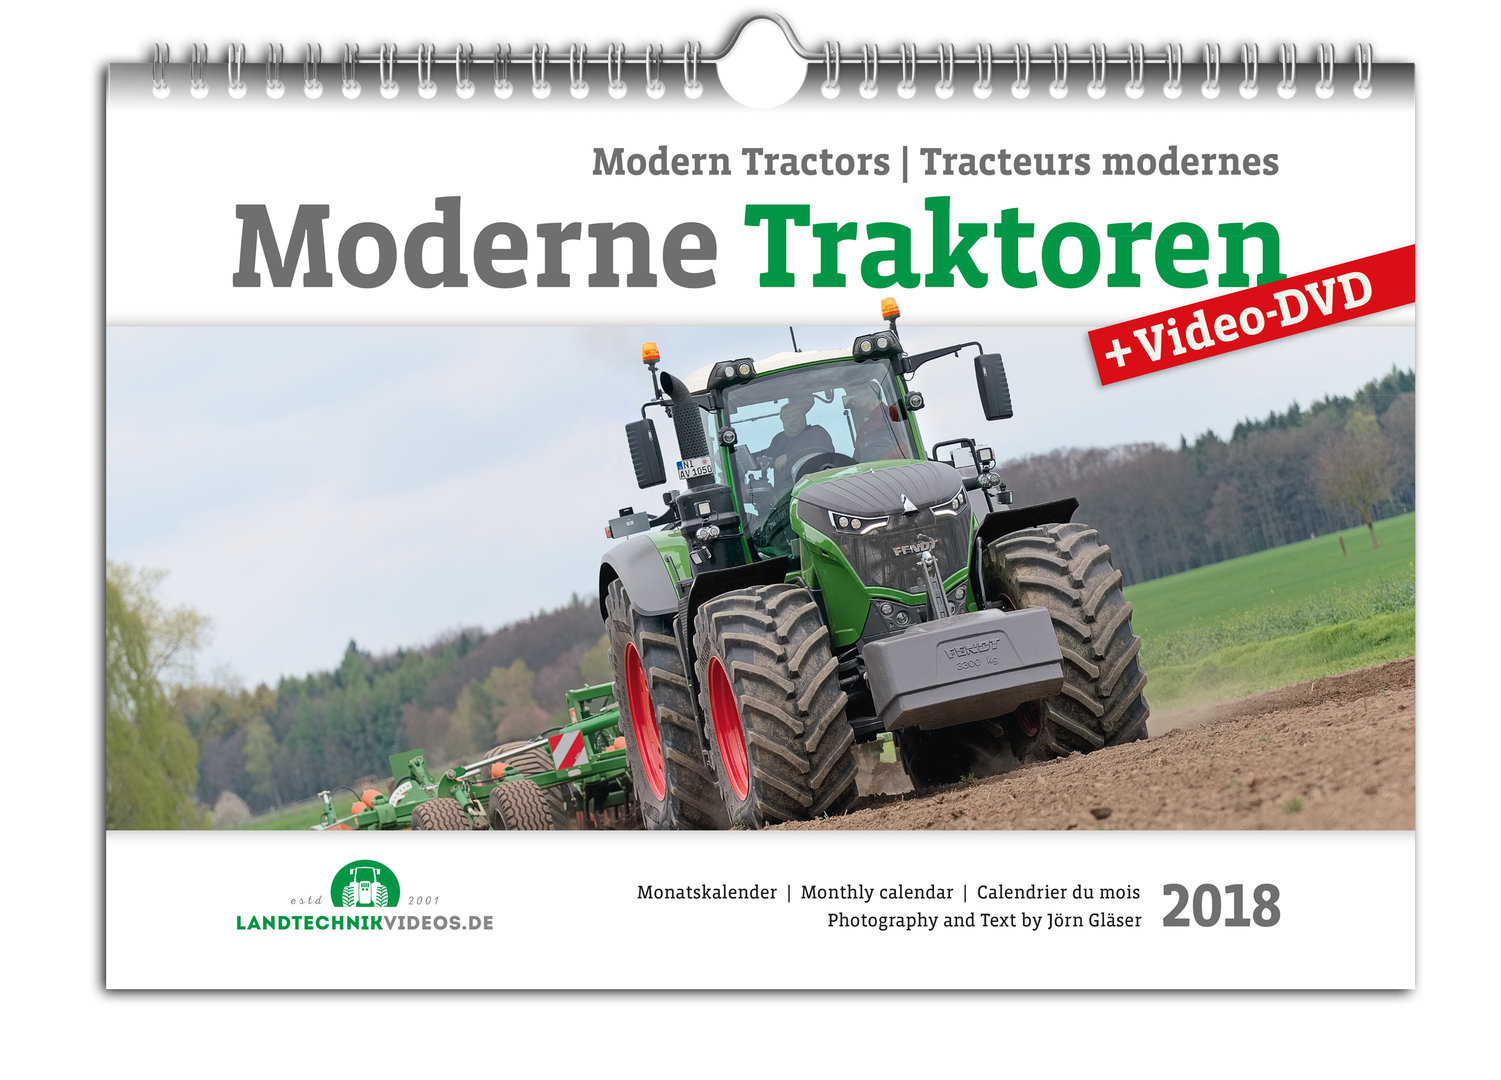 Tracteurs modernes calendrier 2018 + DVD